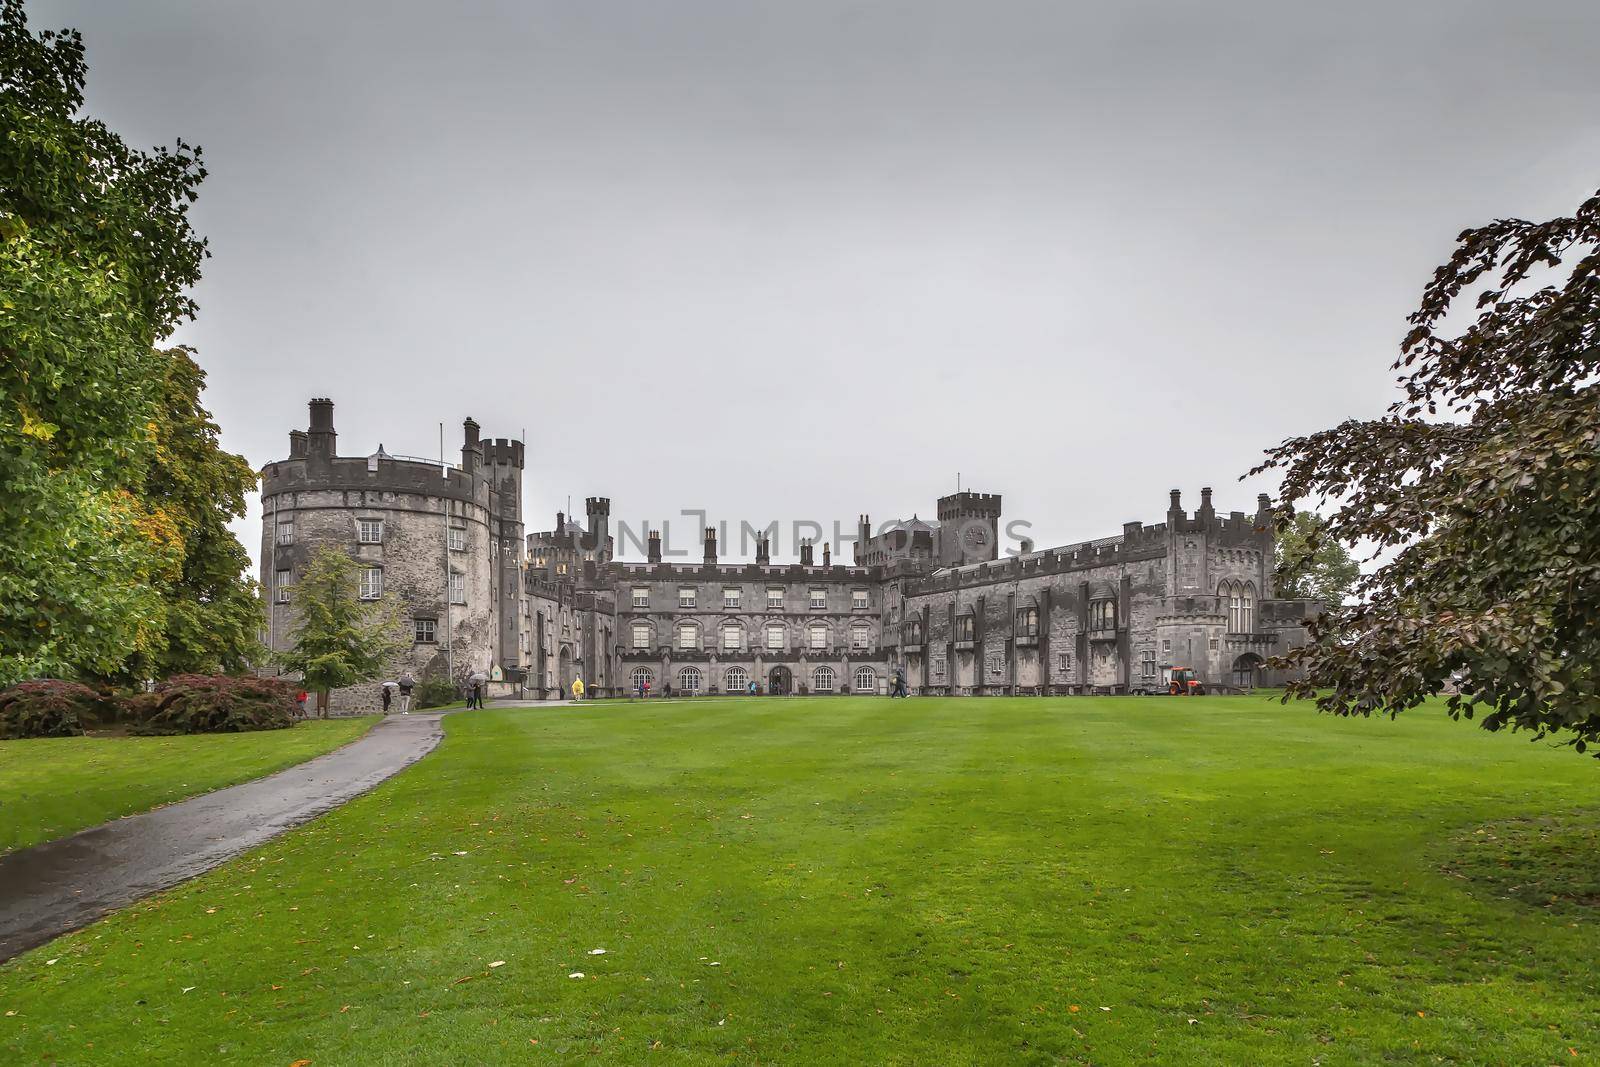 Kilkenny Castle is a castle in Kilkenny, Ireland built in 1195. View from courtyard